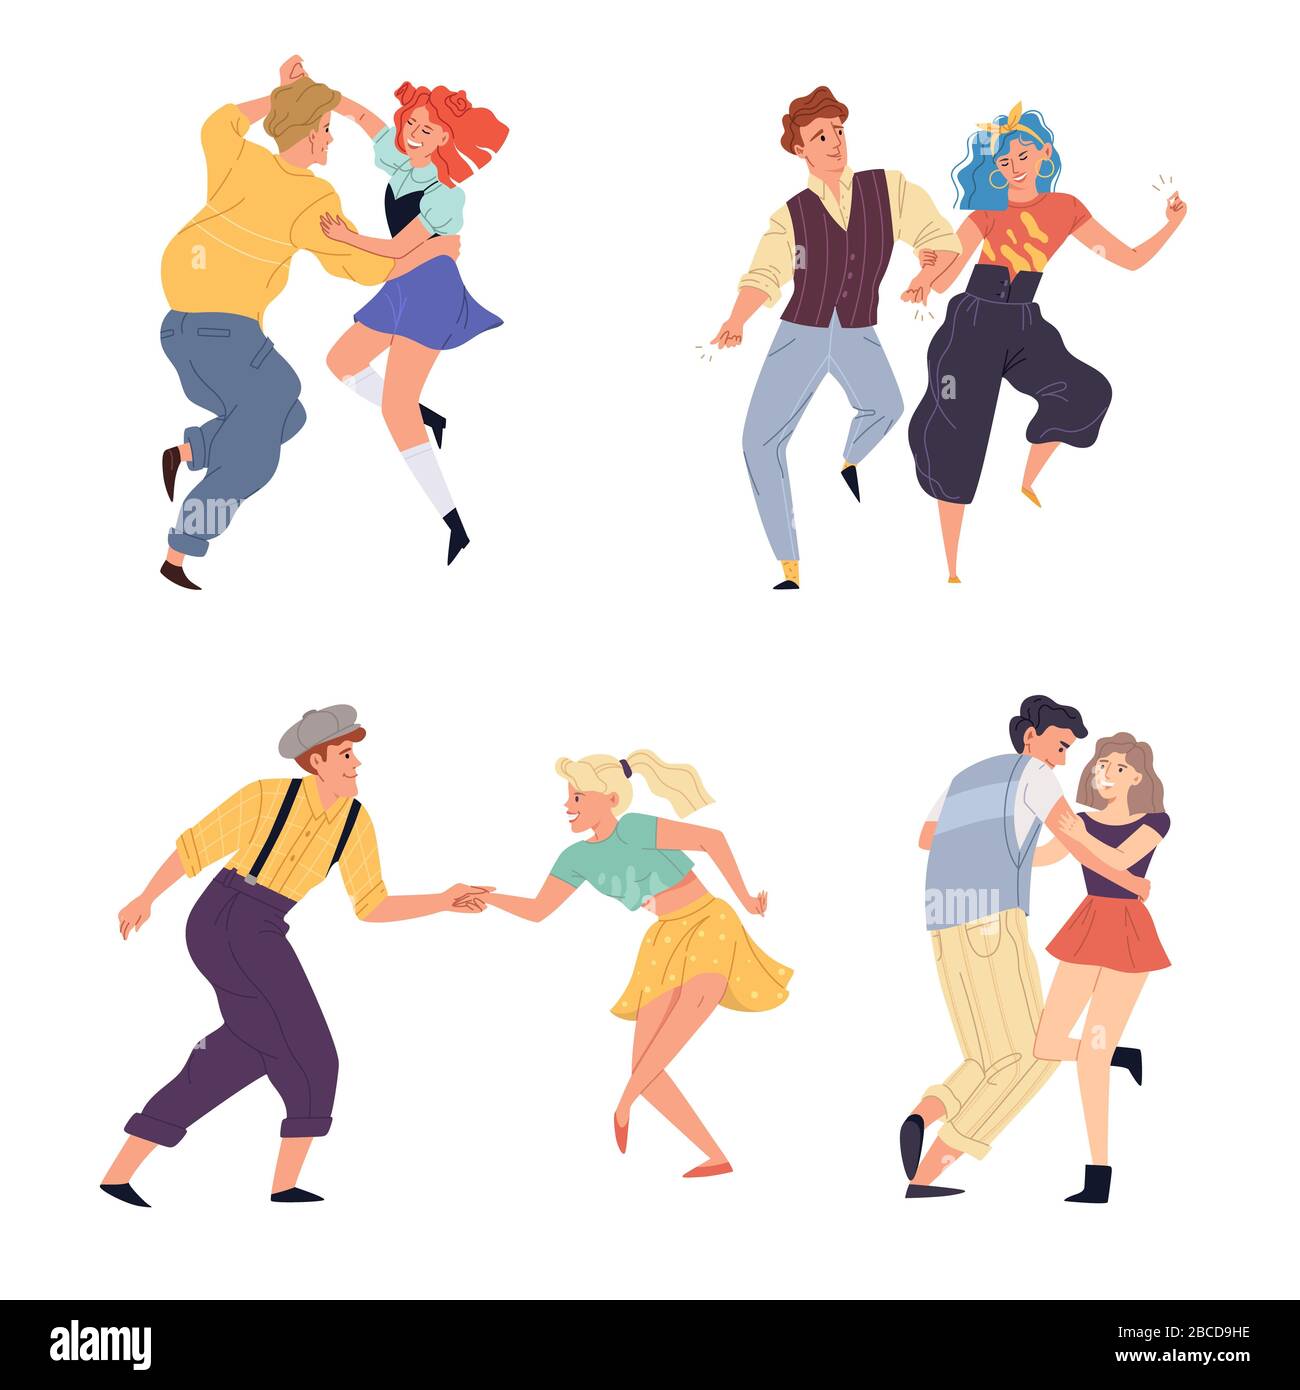 Illustration vectorielle d'un jeu de torsion dansant en couple. Jeune homme et femme dansent sur une fête rétro ou une discothèque nostalgique des années 1950, 1960, 1970. Dessin animé plat c Banque D'Images